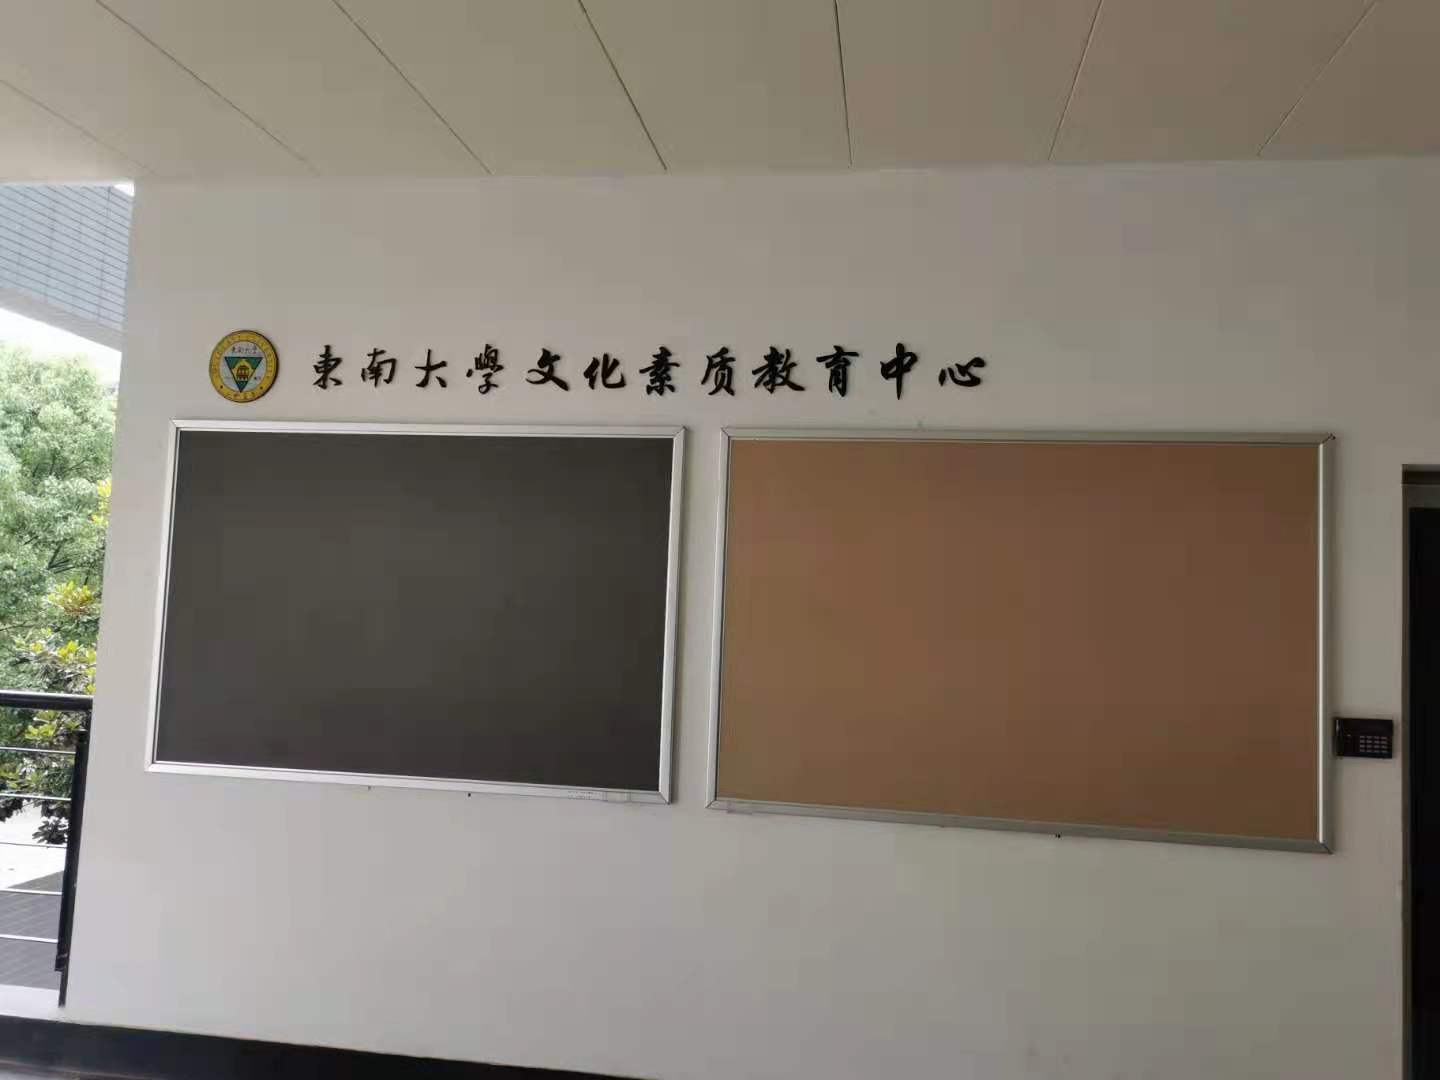 学校教室后墙黑板 可按图钉的黑板\t 软木板公告栏 优雅乐 重复插钉1万次